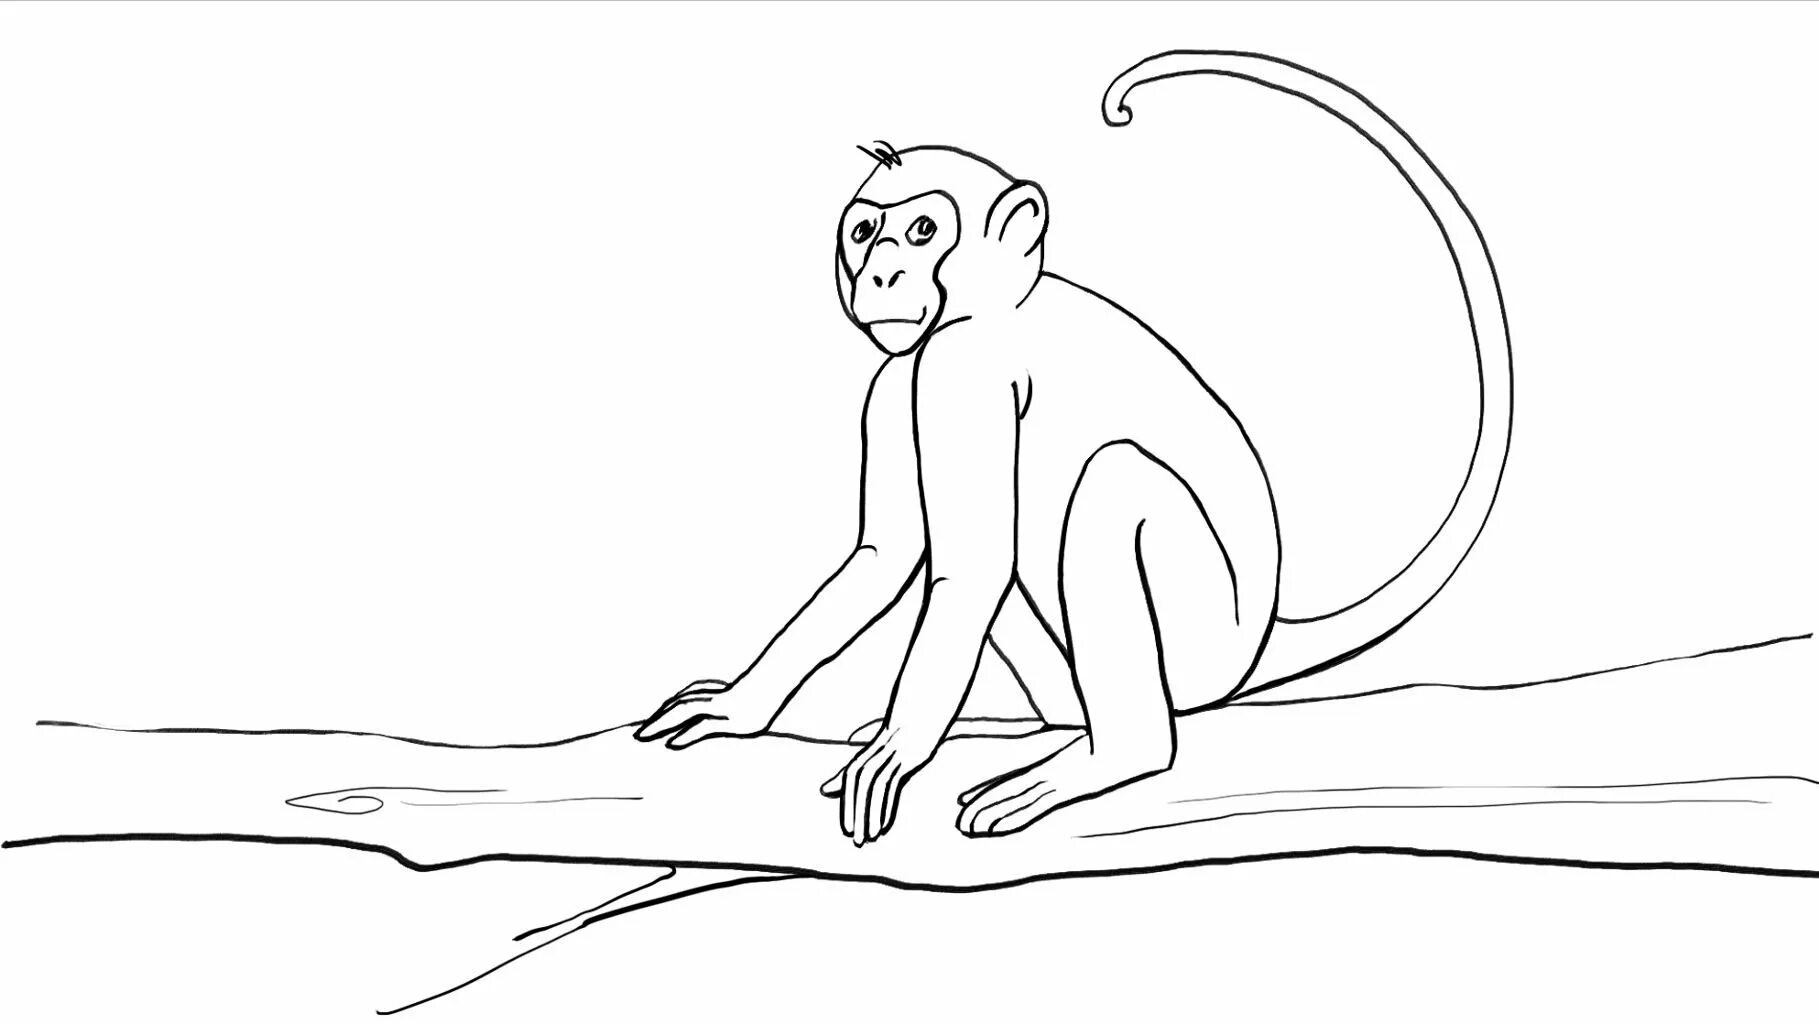 Обезьяна рисунок карандашом. Рисунок обезьяны карандашом для срисовки. Рисунки обезьянки для срисовки. Обезьяна раскраска. Рисунок обезьяны карандашом